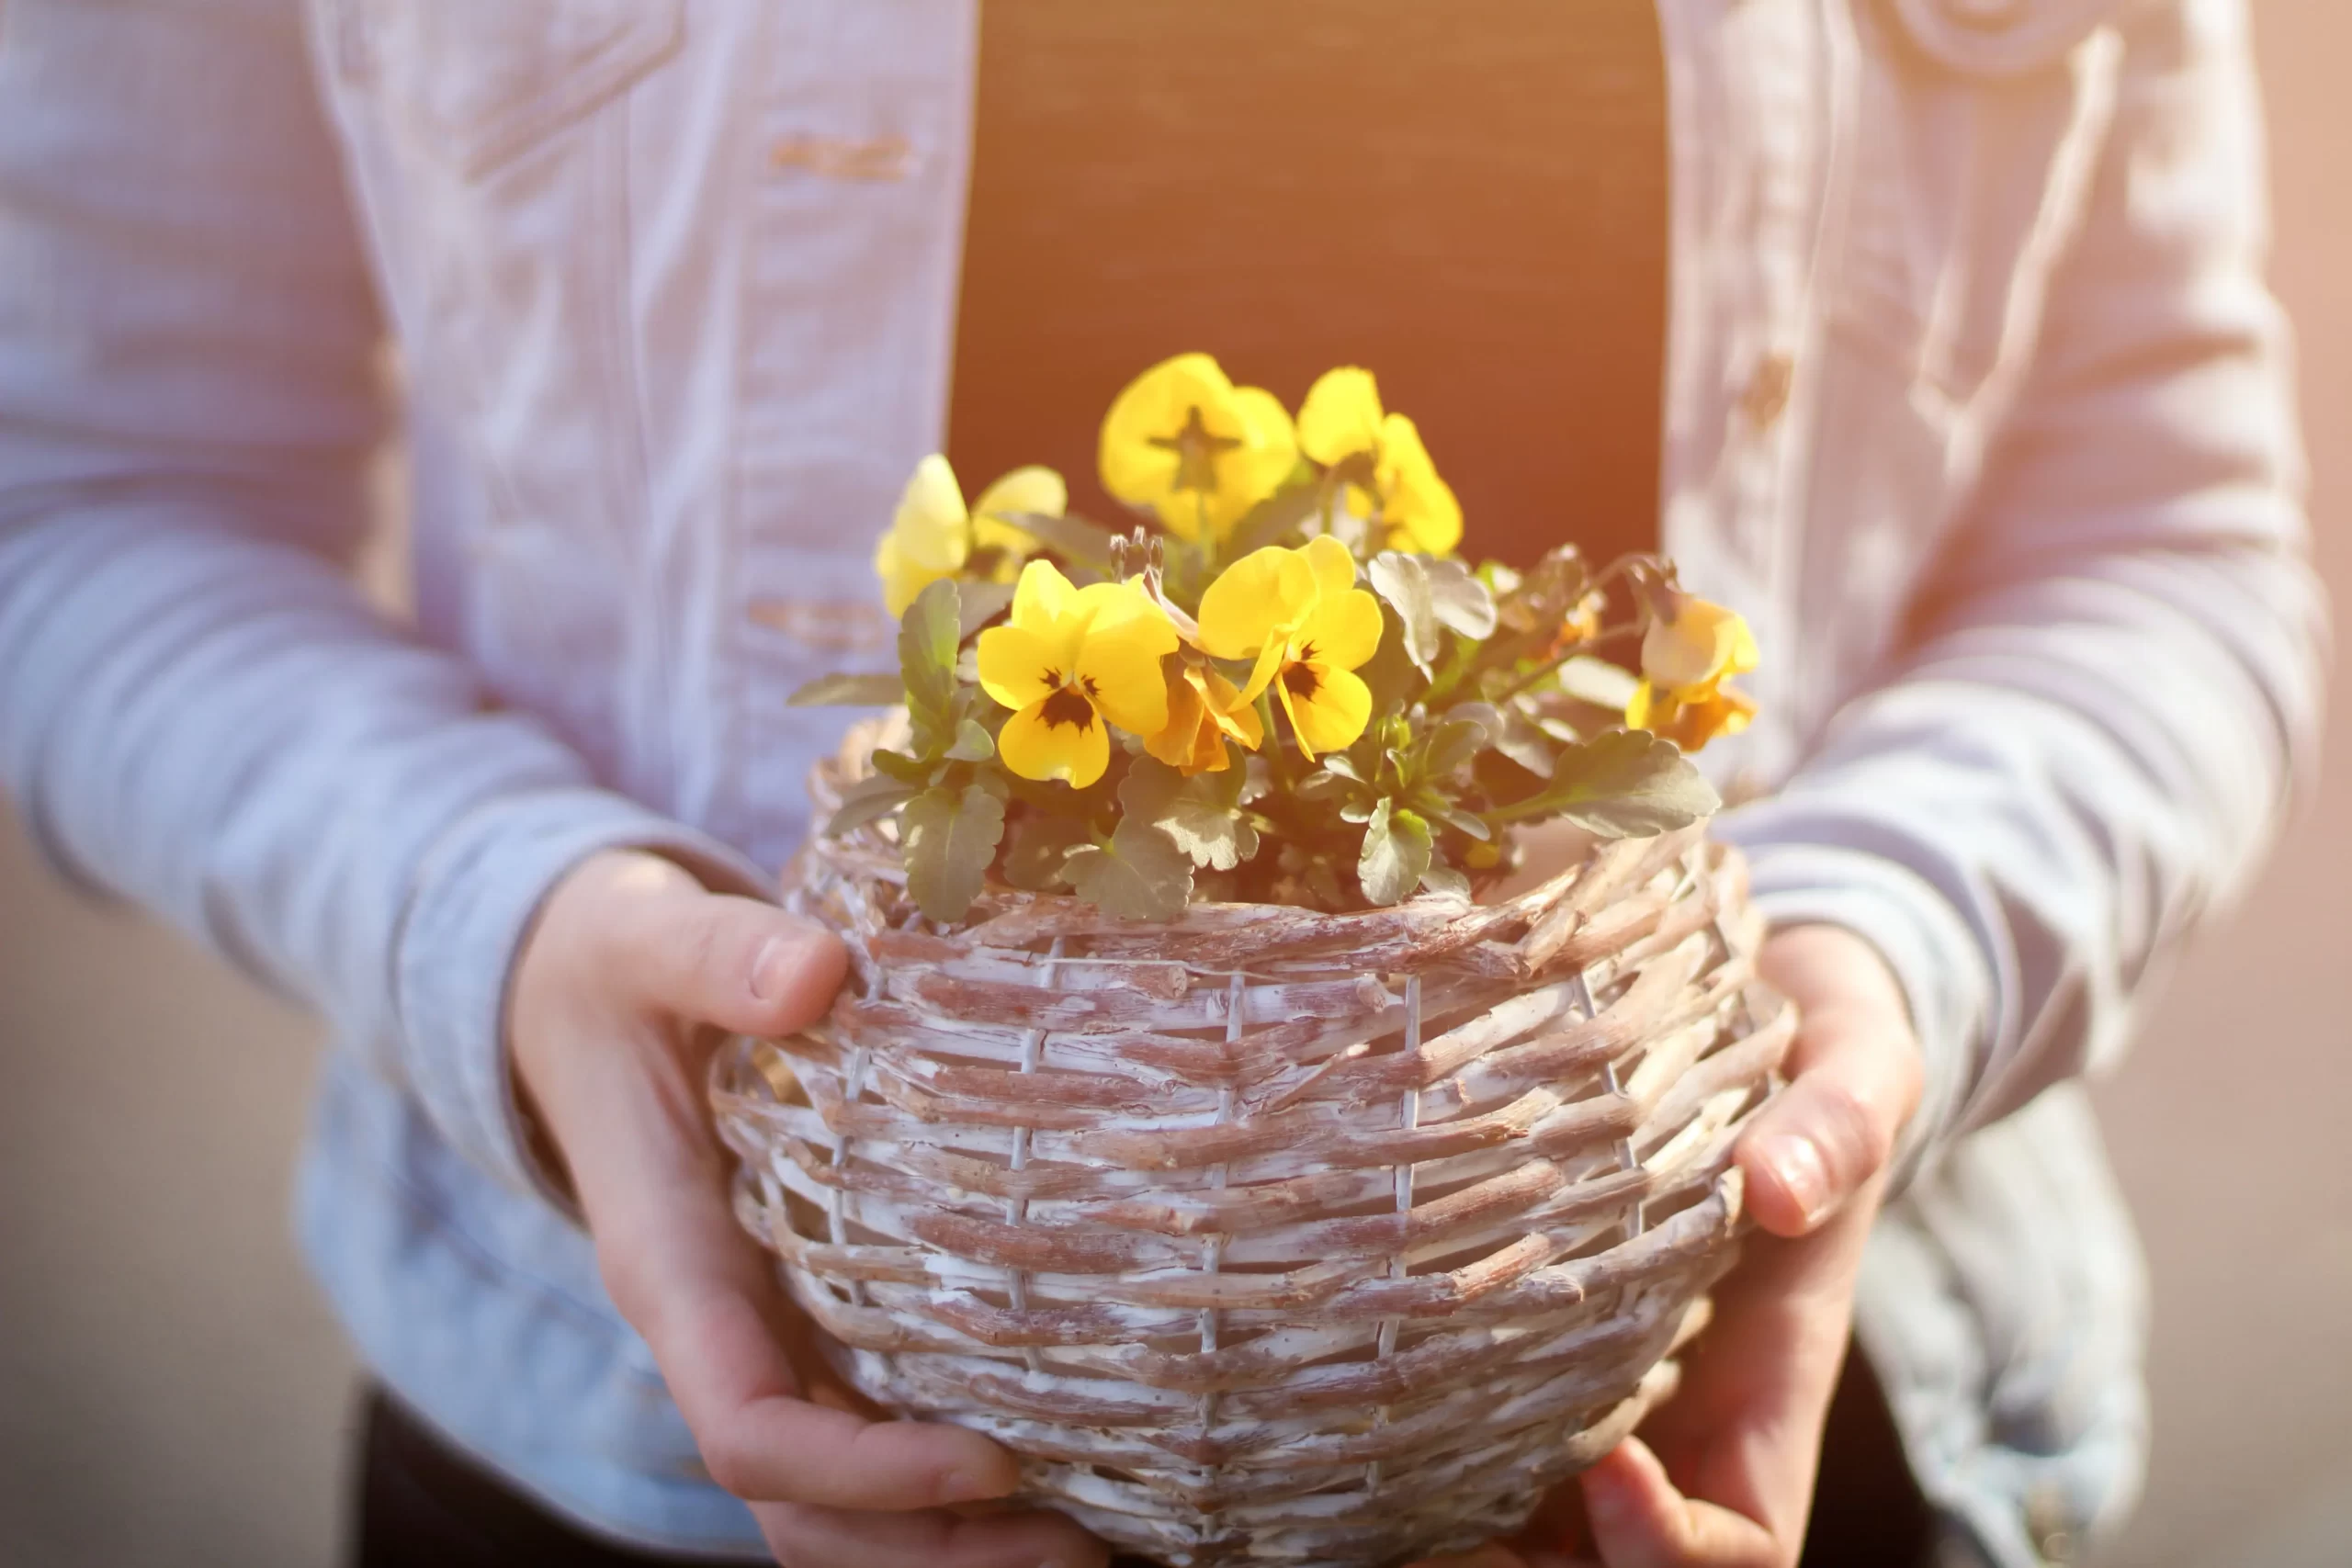 İdeal Çiçek Sepeti: İdeal Çiçek Sepeti ile Unutulmaz Çiçek Siparişleri 